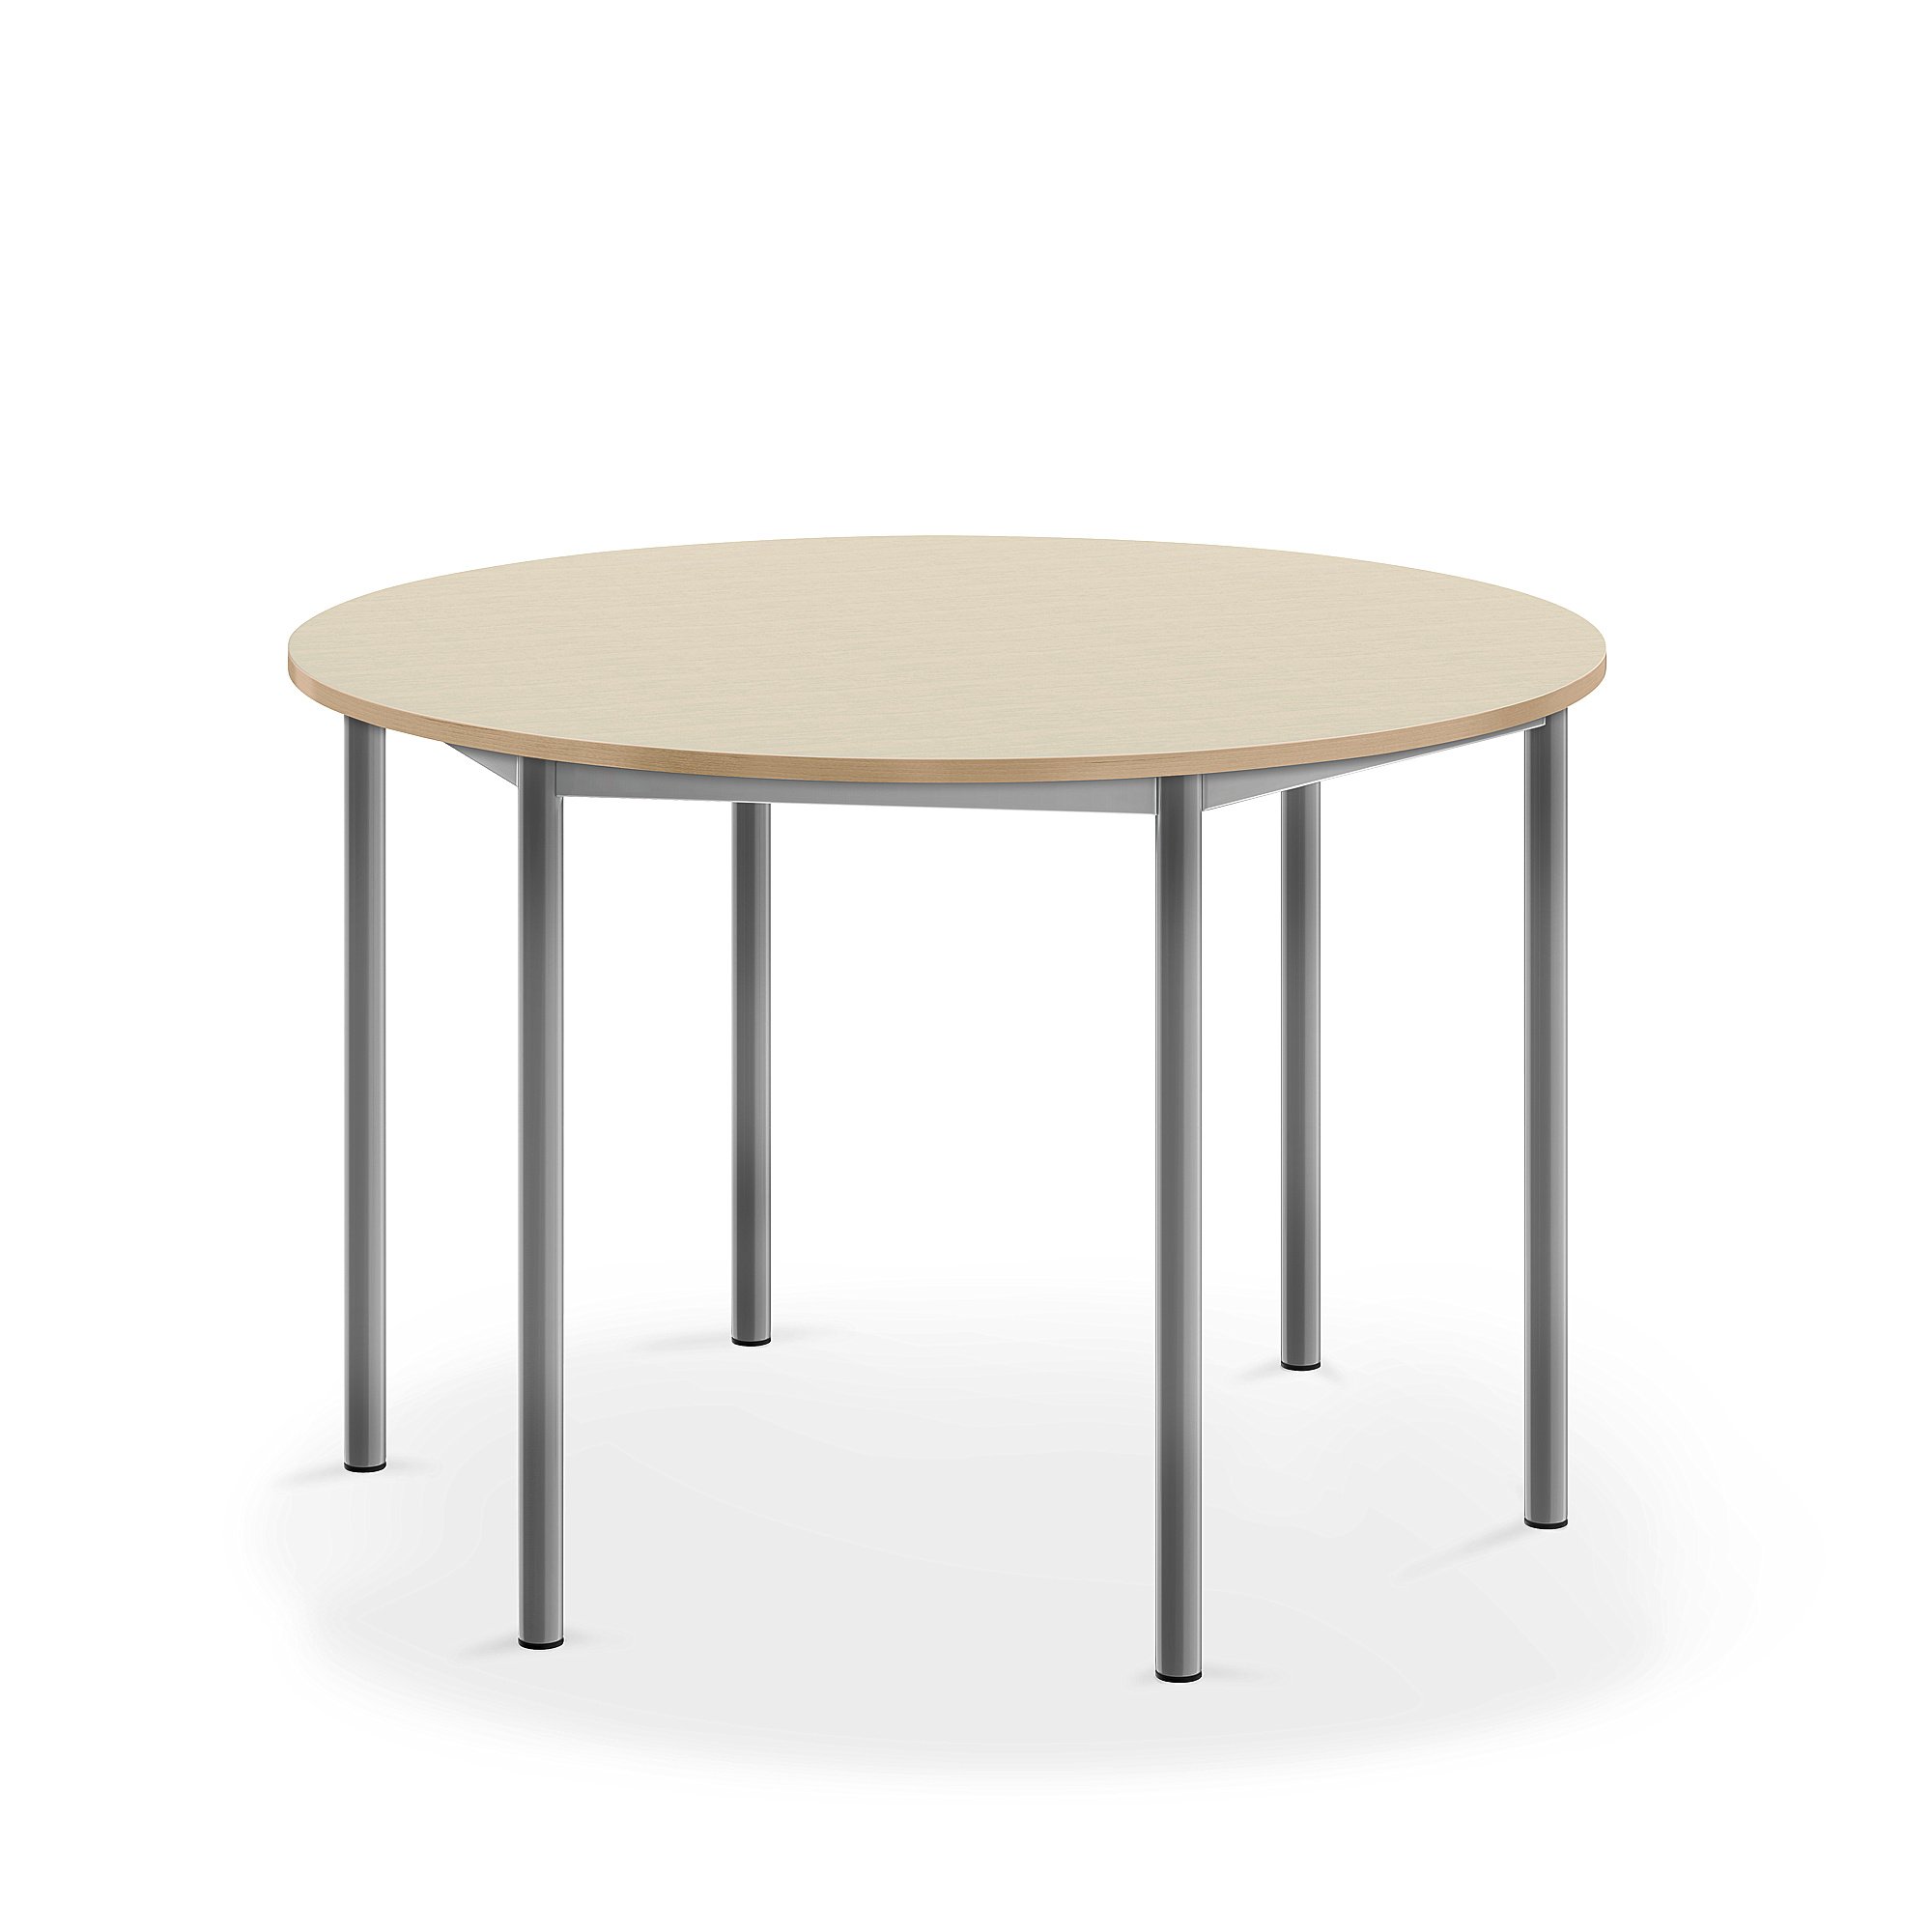 Stůl SONITUS, Ø1200x760 mm, stříbrné nohy, HPL deska tlumící hluk, bříza